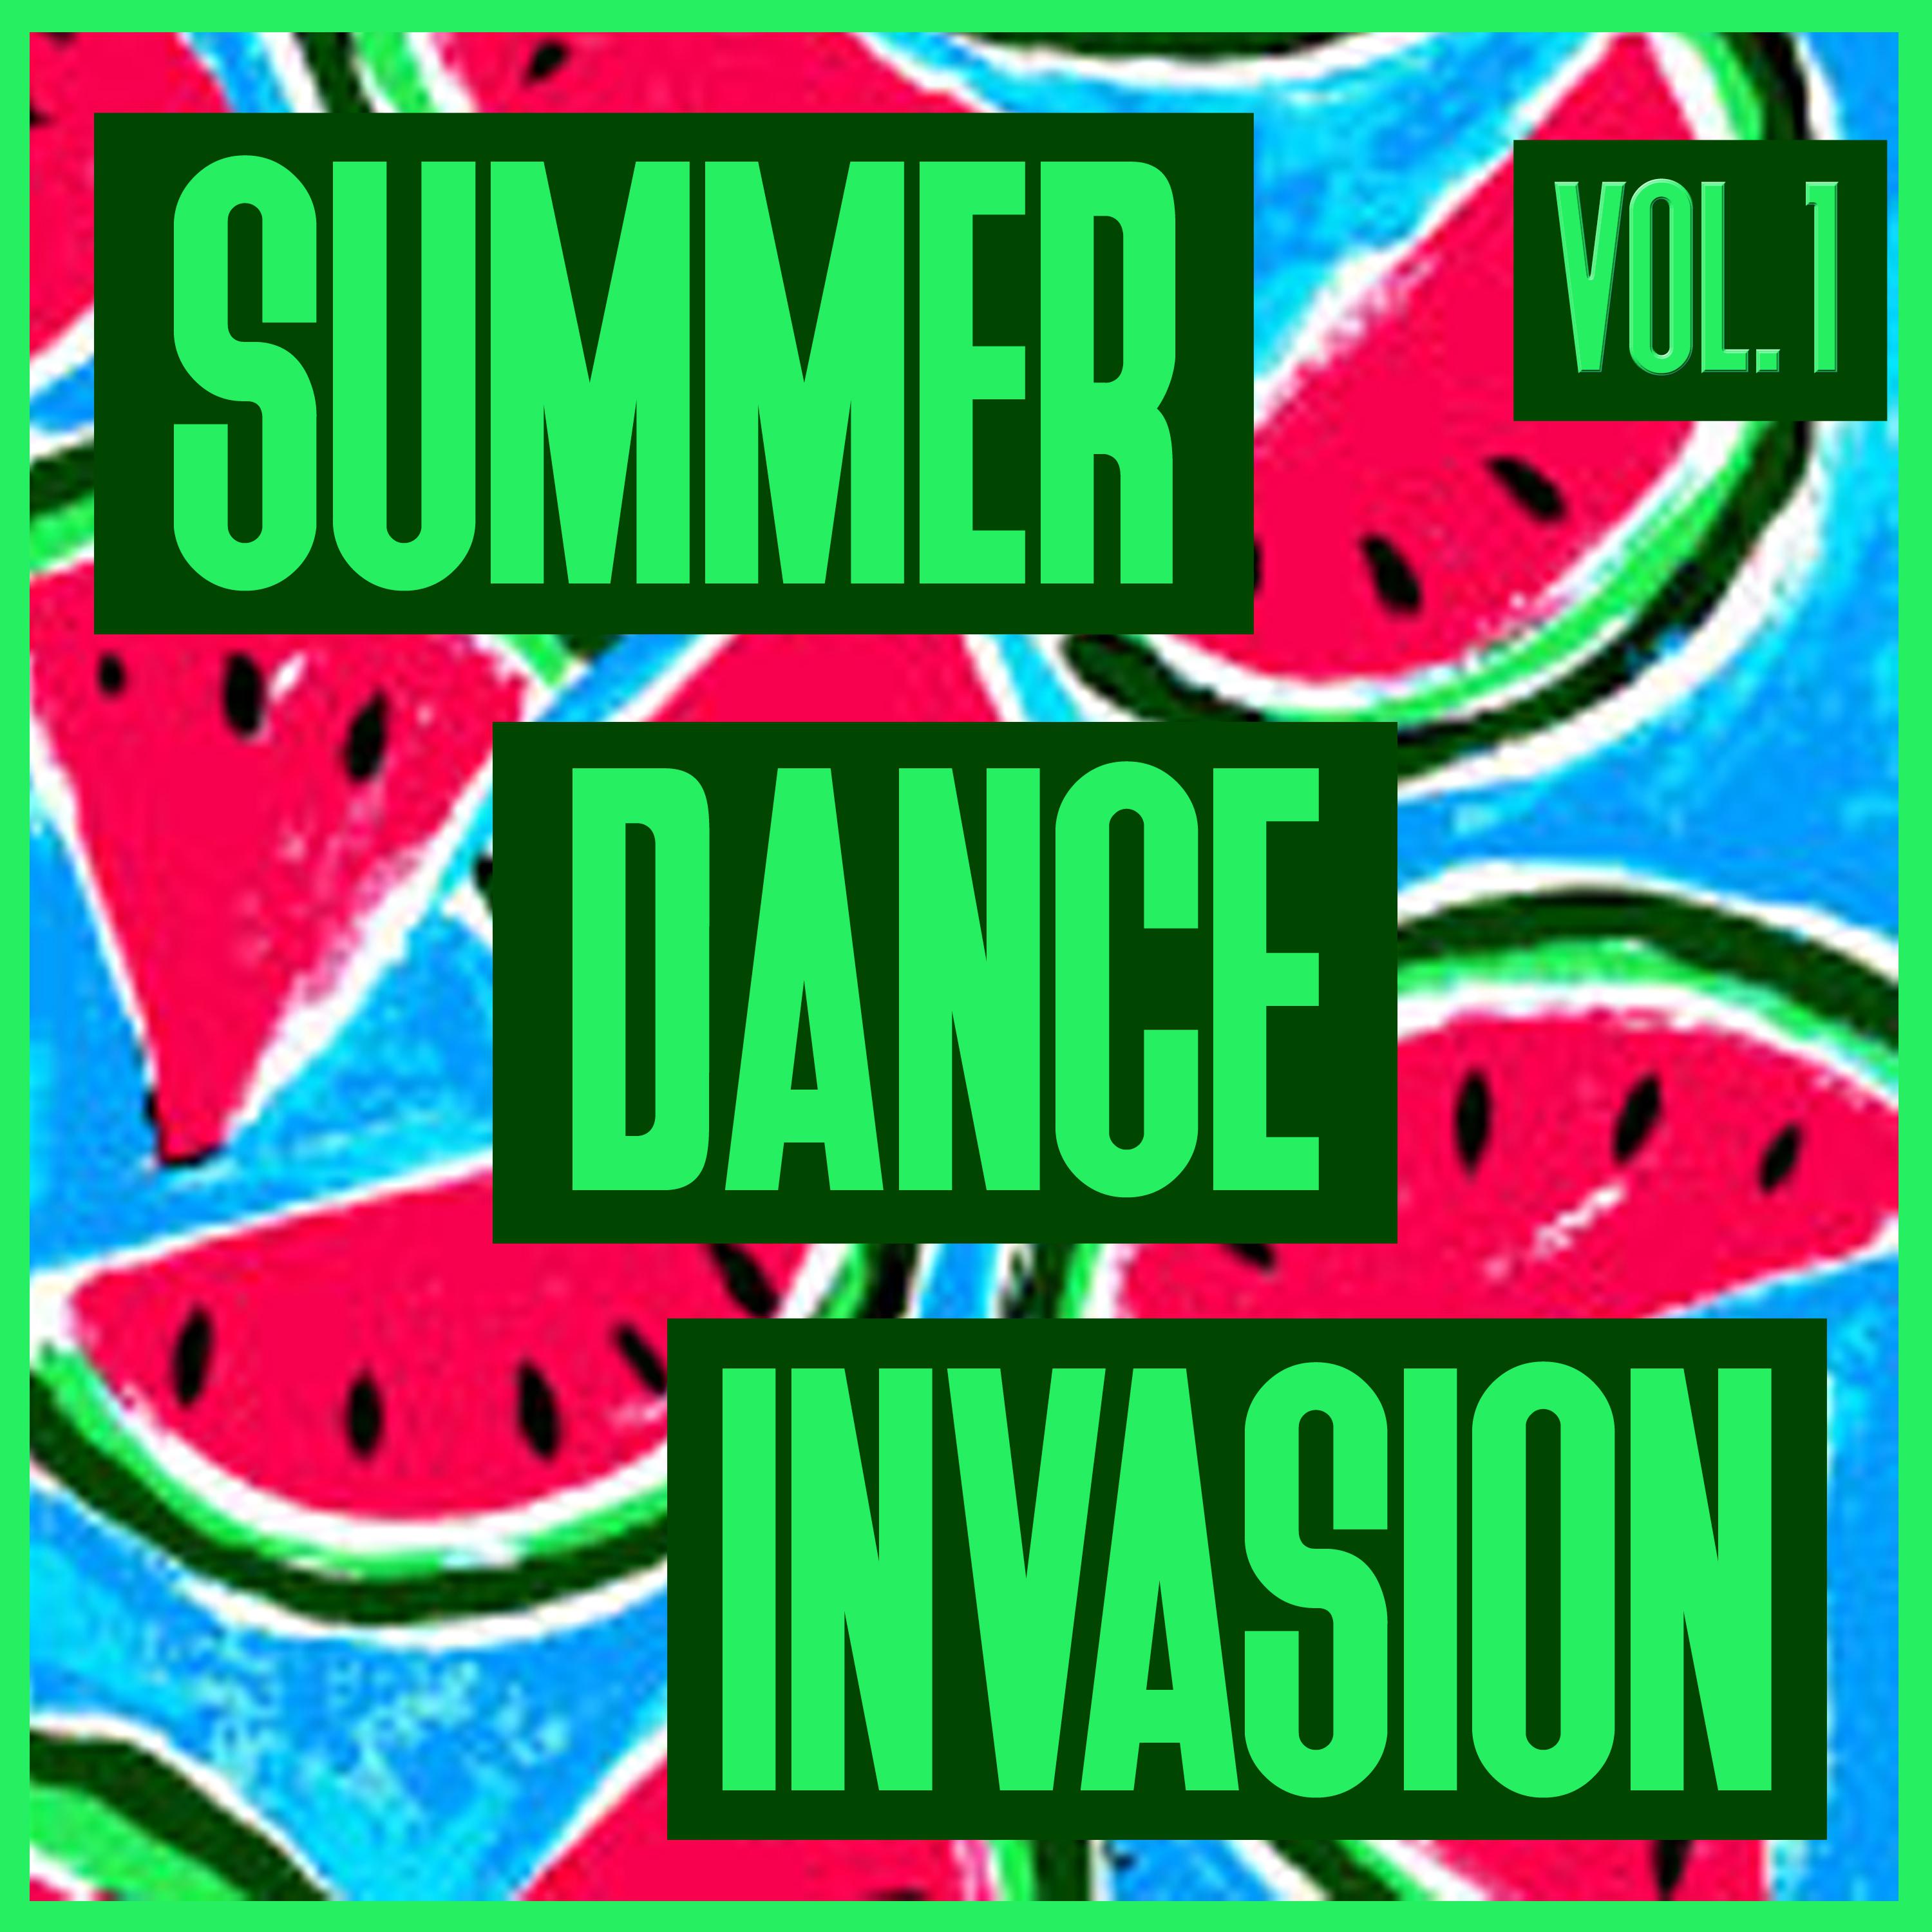 Summer Dance Invasion, Vol. 1